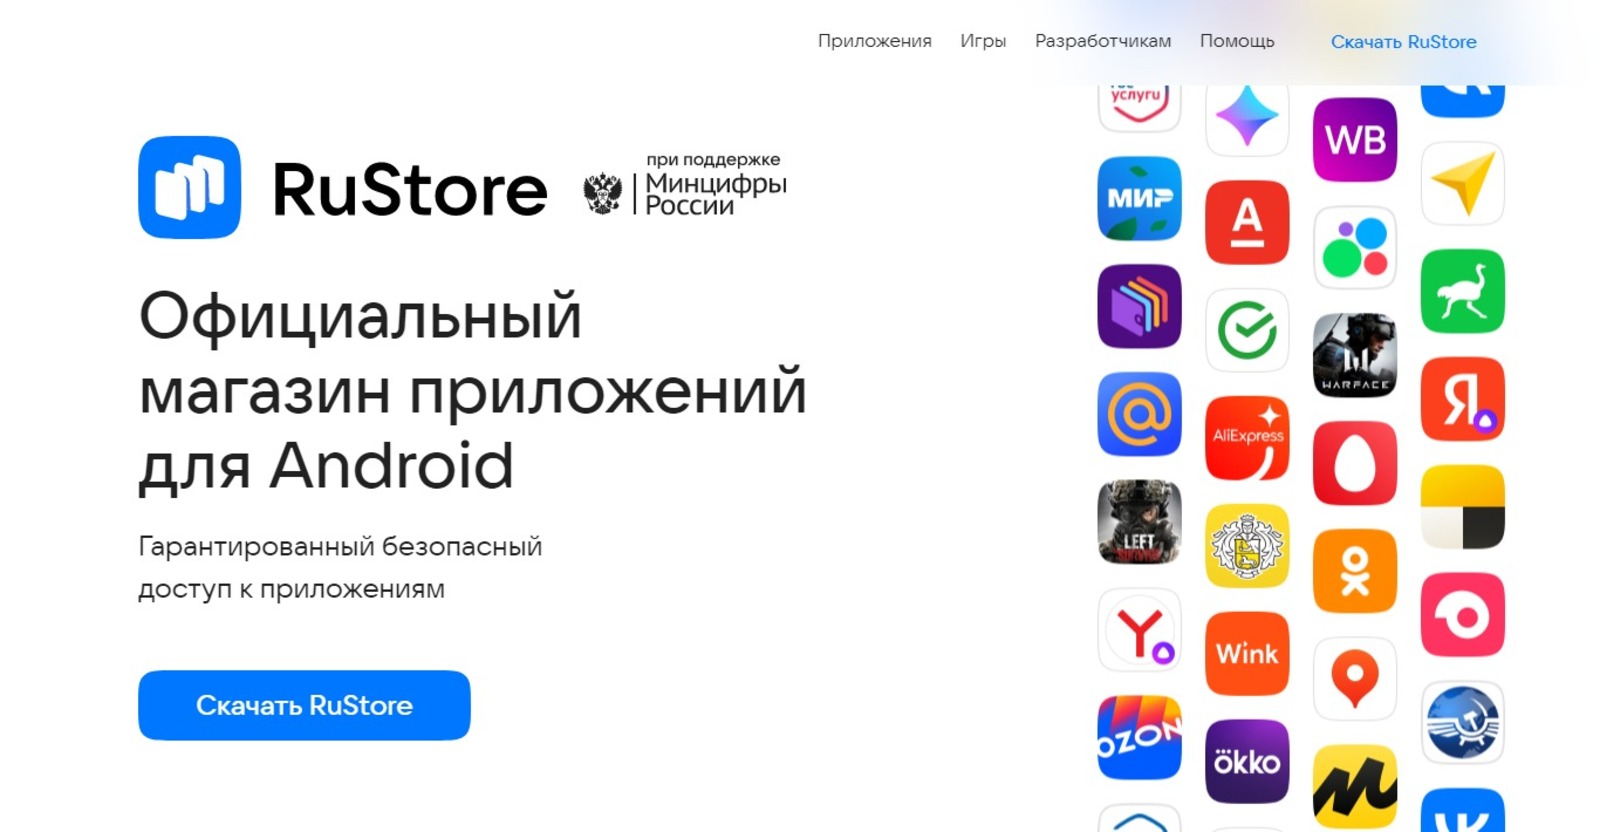 скриншот с сайта RuStore